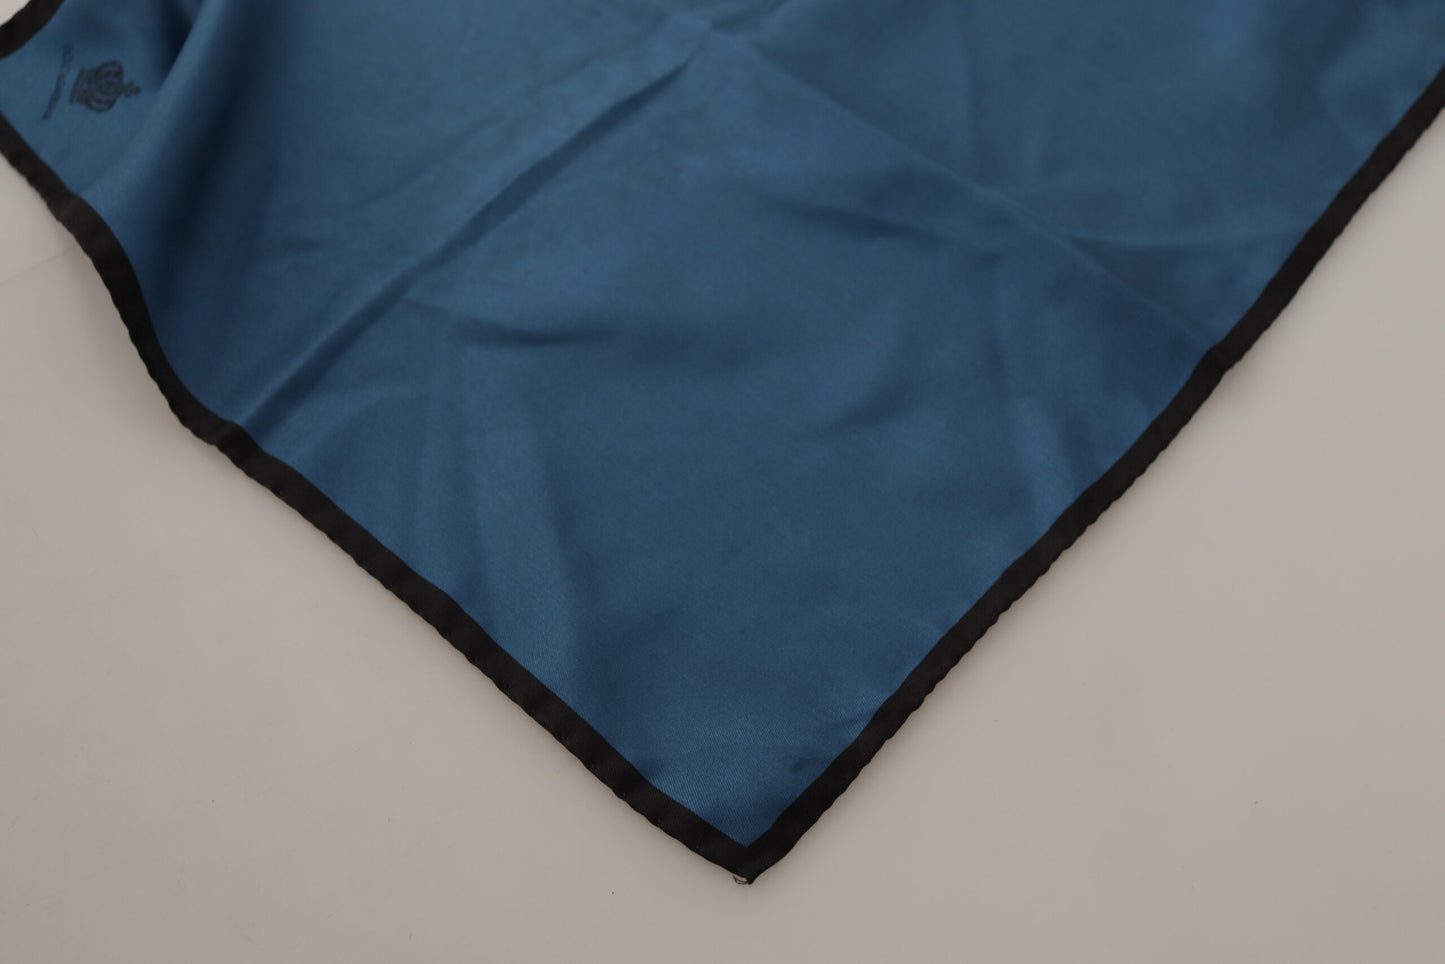 Dolce & Gabbana Black Blue DG Crown gedrucktem Quadrat Taschentuch Schalel